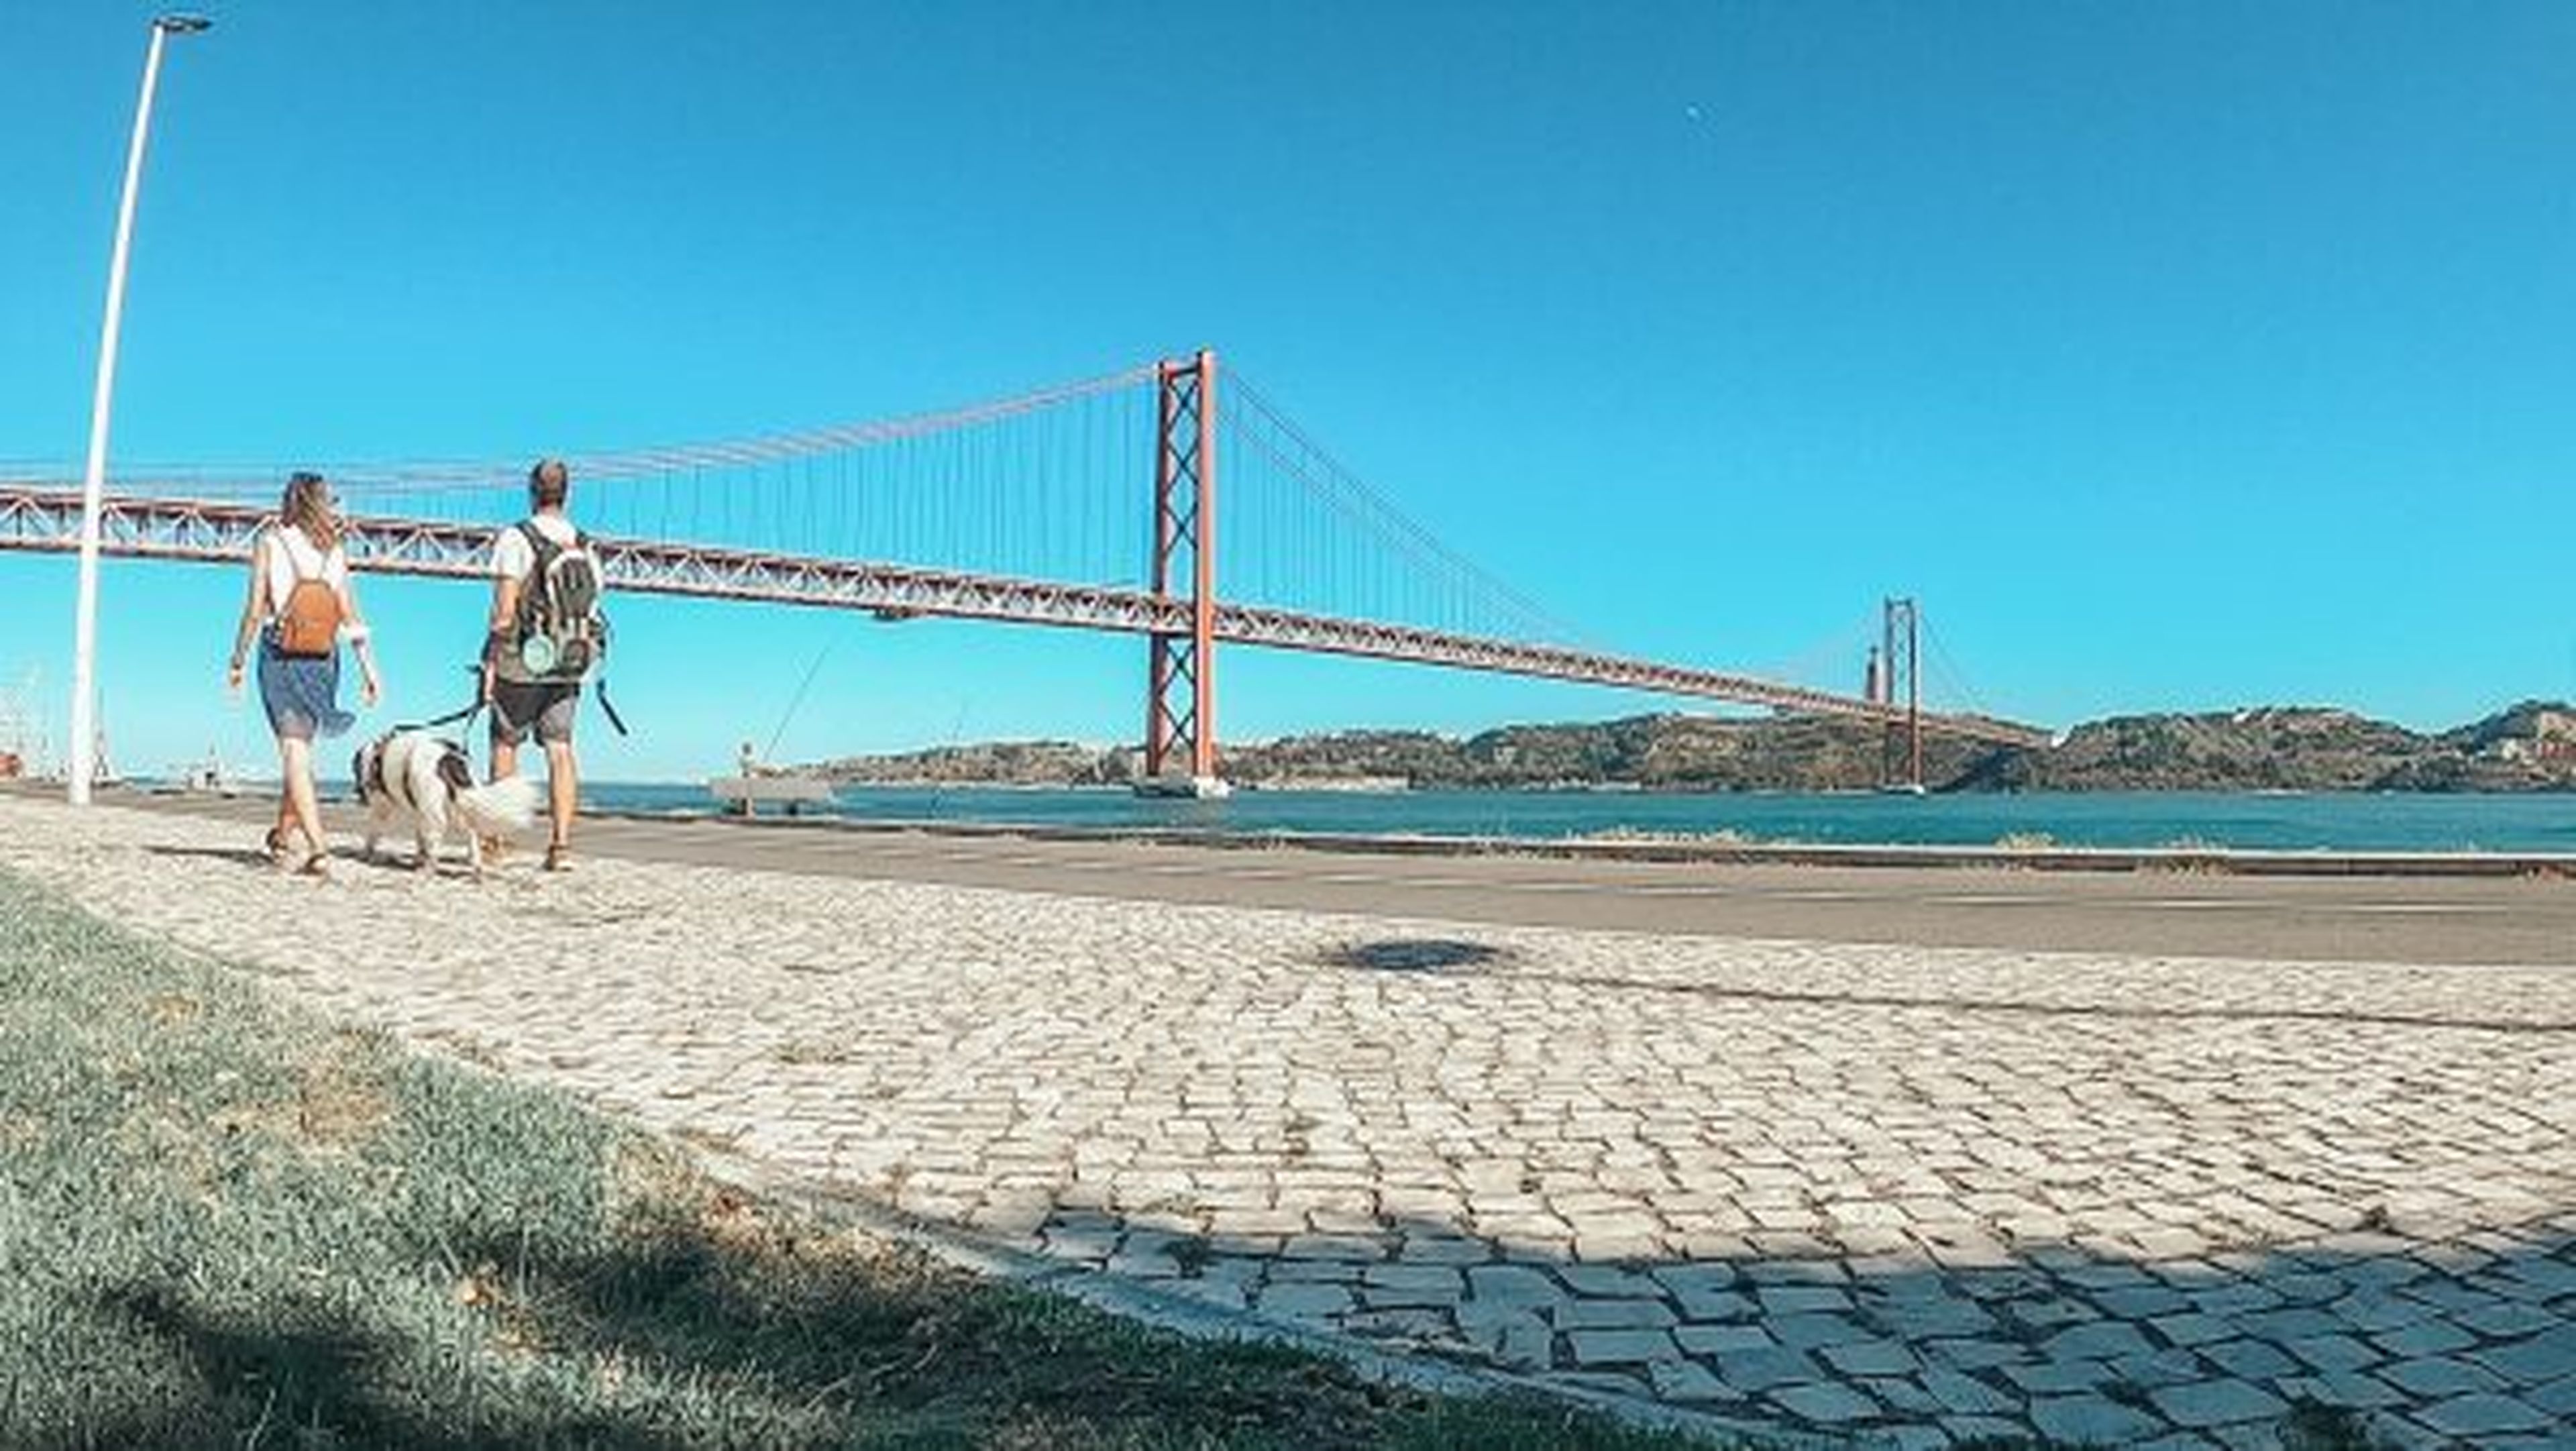 El equipo de 'Galaventura' en el Puente rojo 25 de abril de Portugal, el puente colgante más largo de Europa.